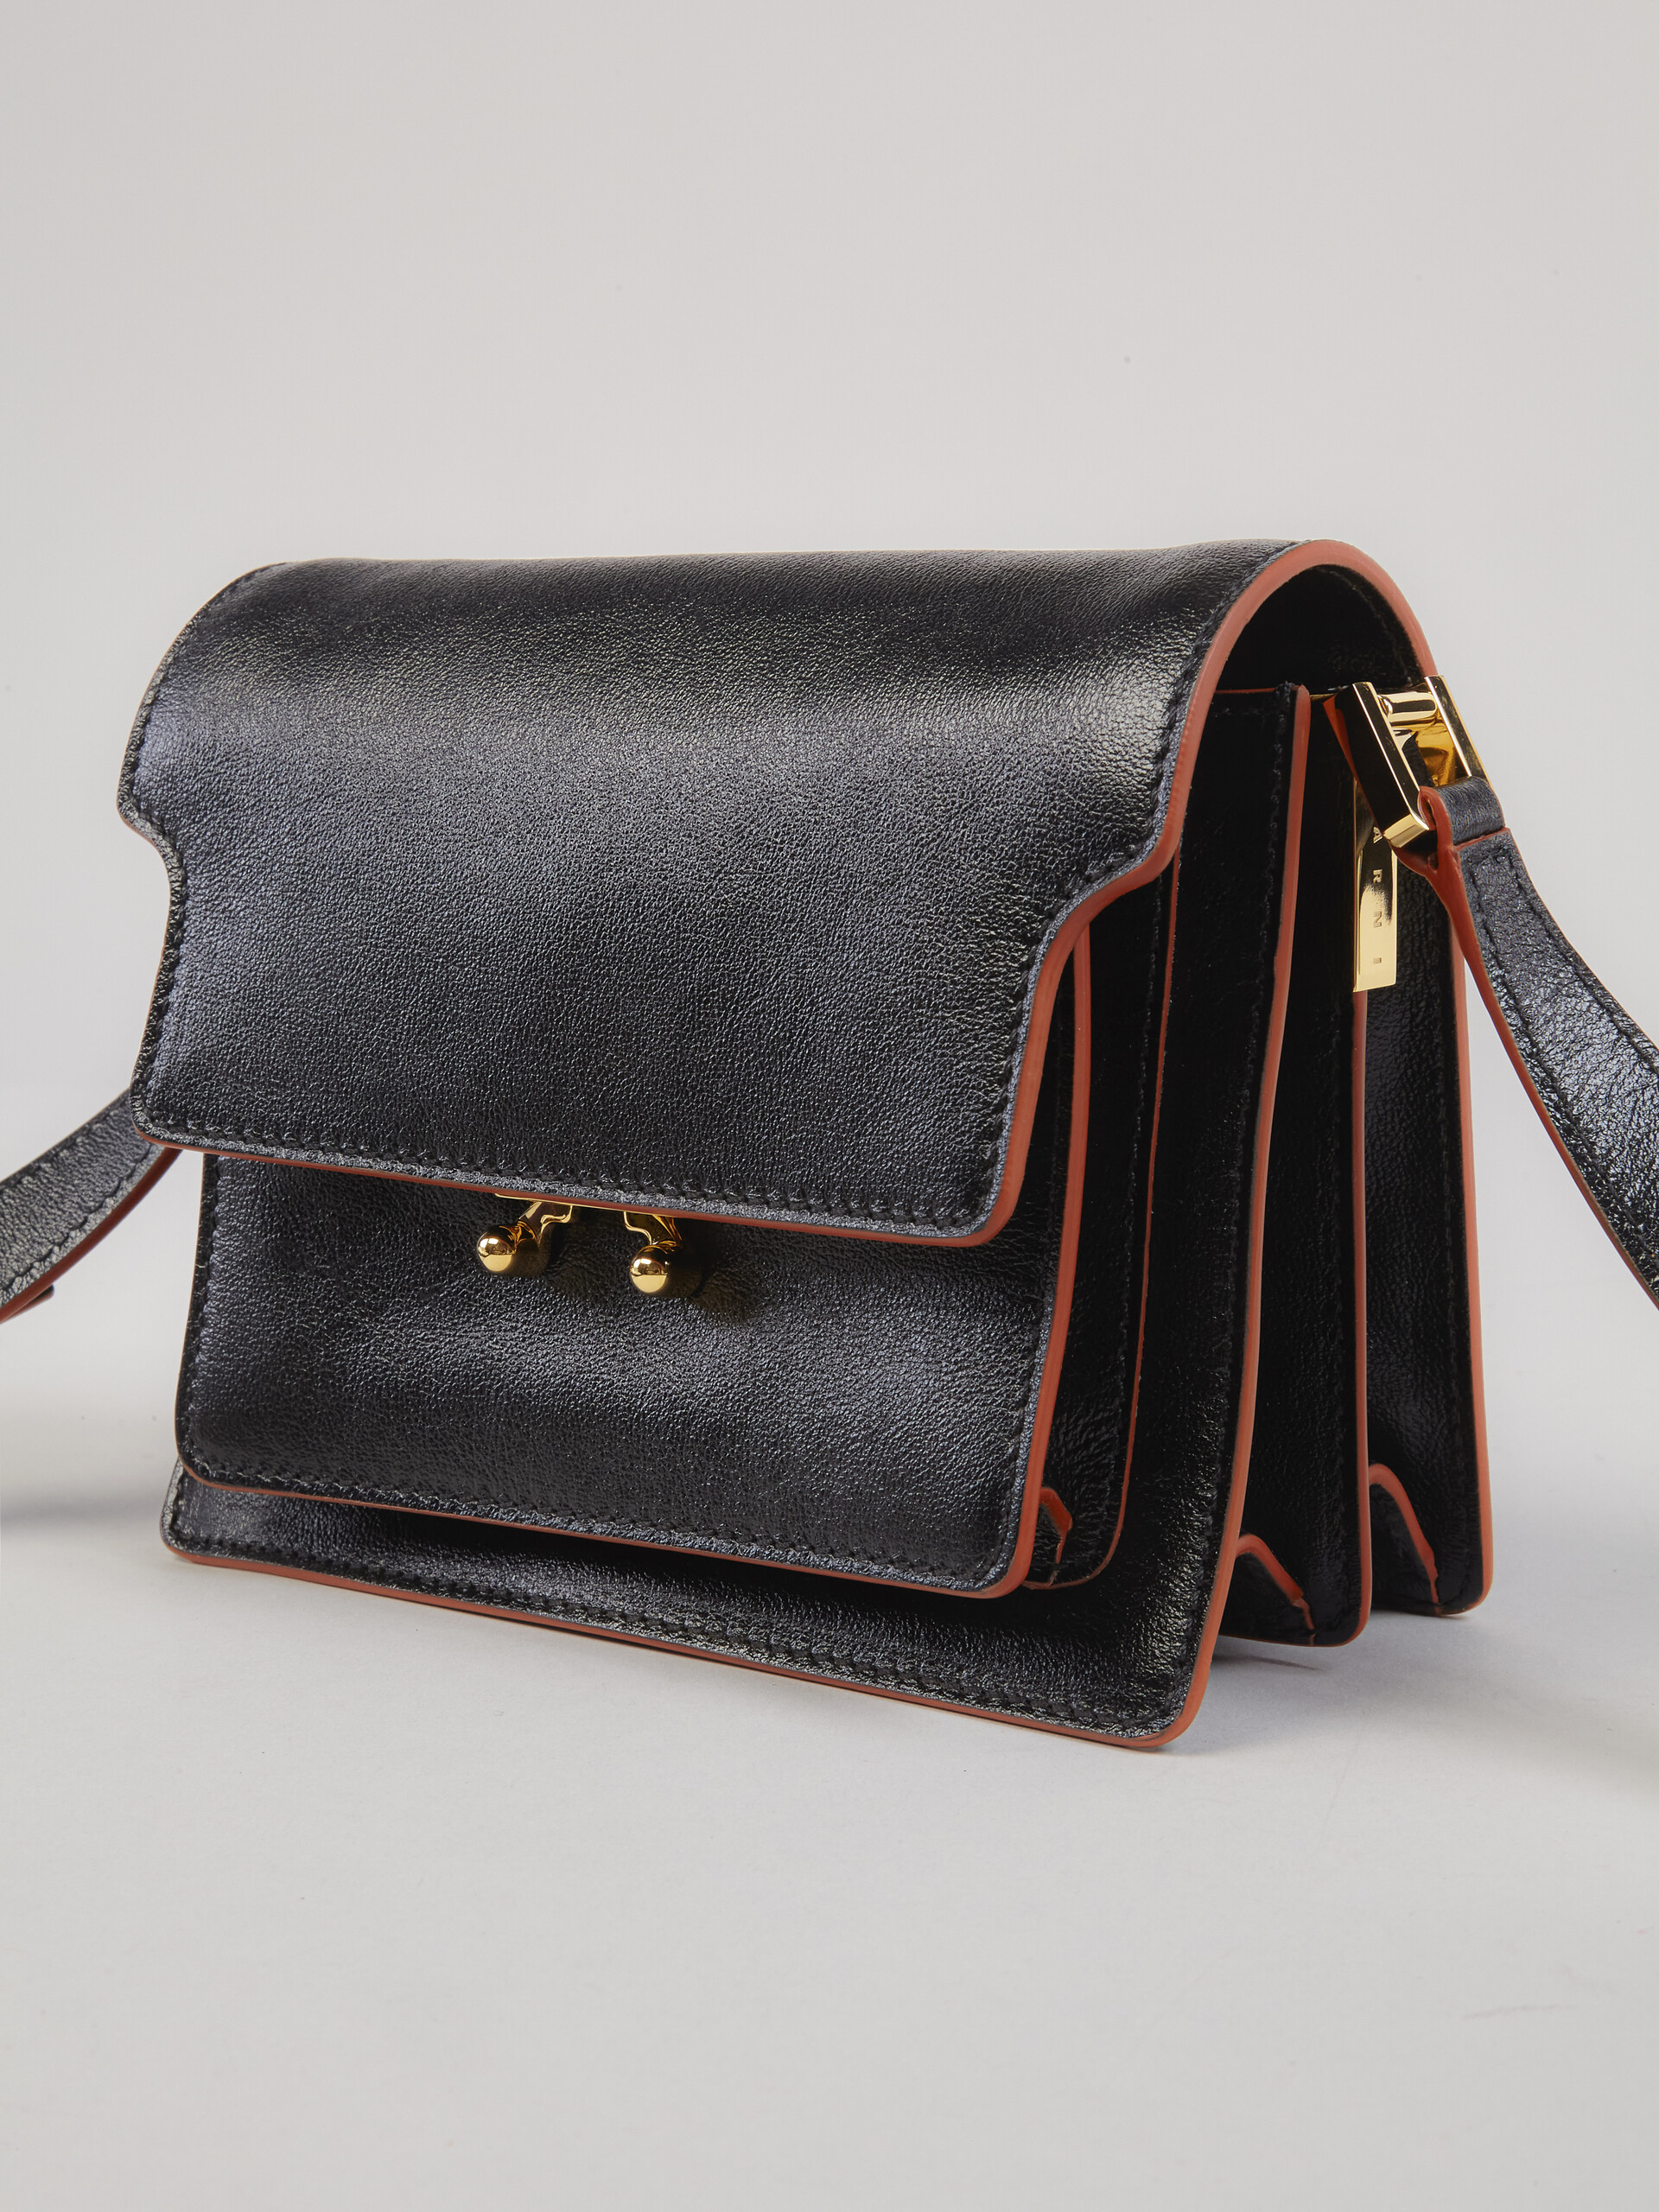 Mini sac TRUNK SOFT en veau foulonné noir - Sacs portés épaule - Image 4